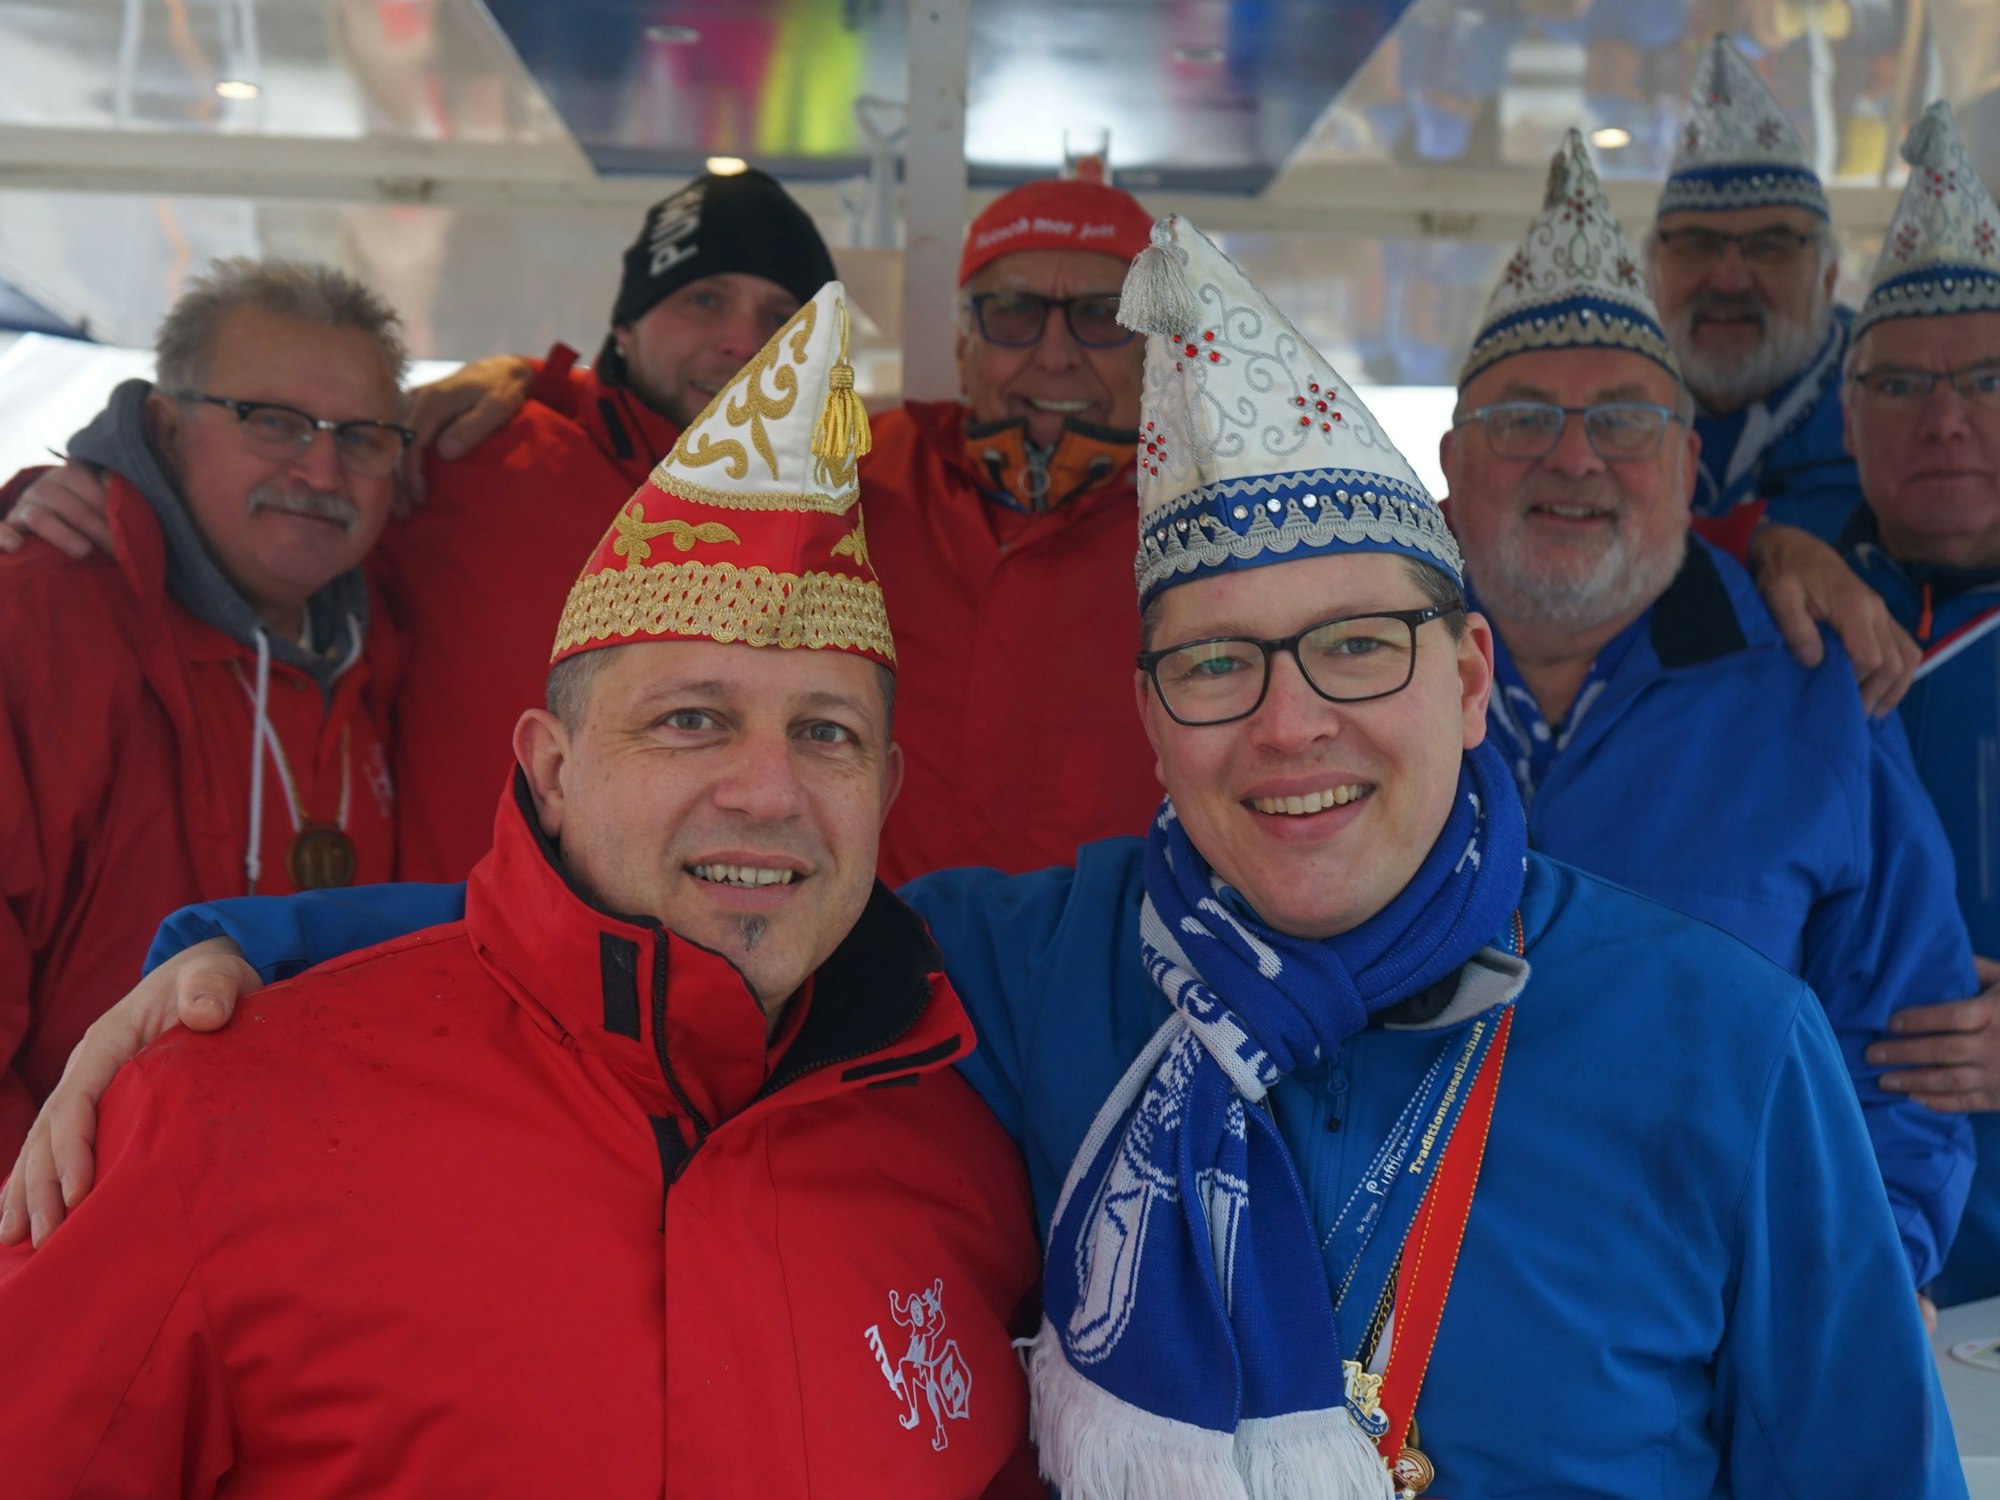 Vertreter der Karnevalsgesellschaften in roten und blauen Jacken.